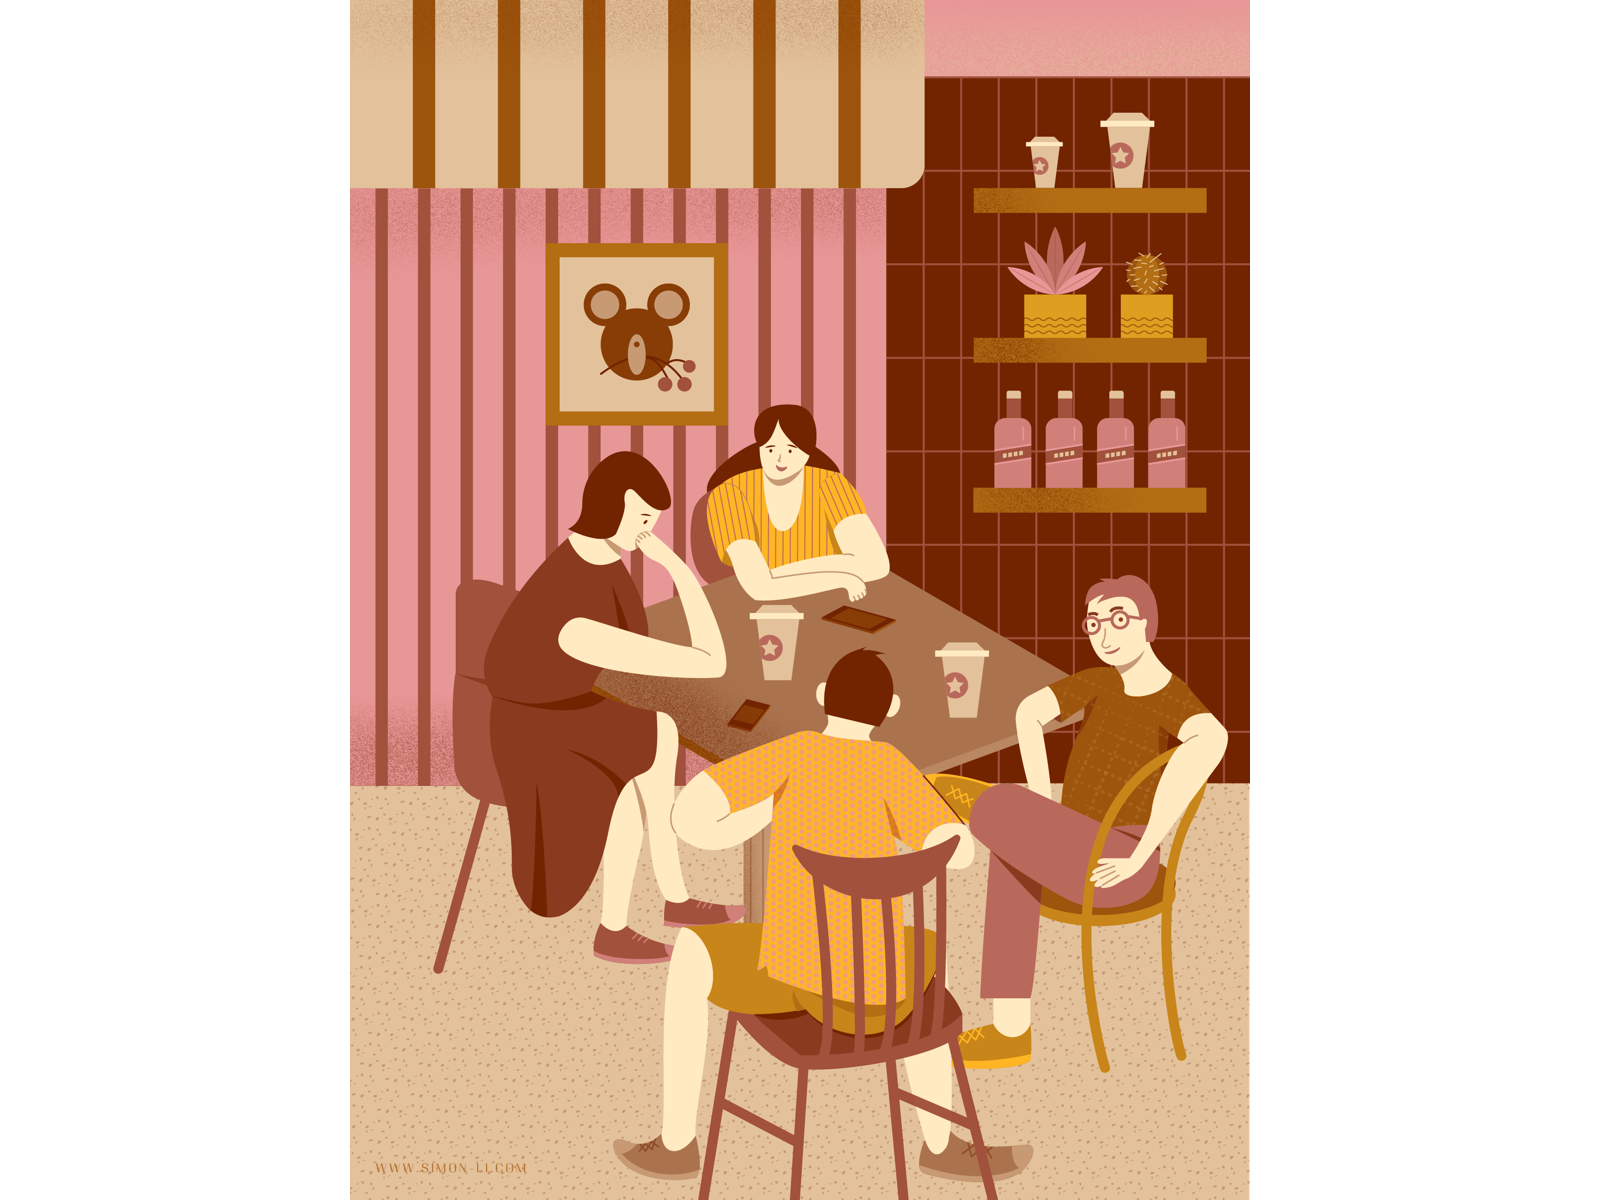 Coffee Shop by Simon Li on Dribbble